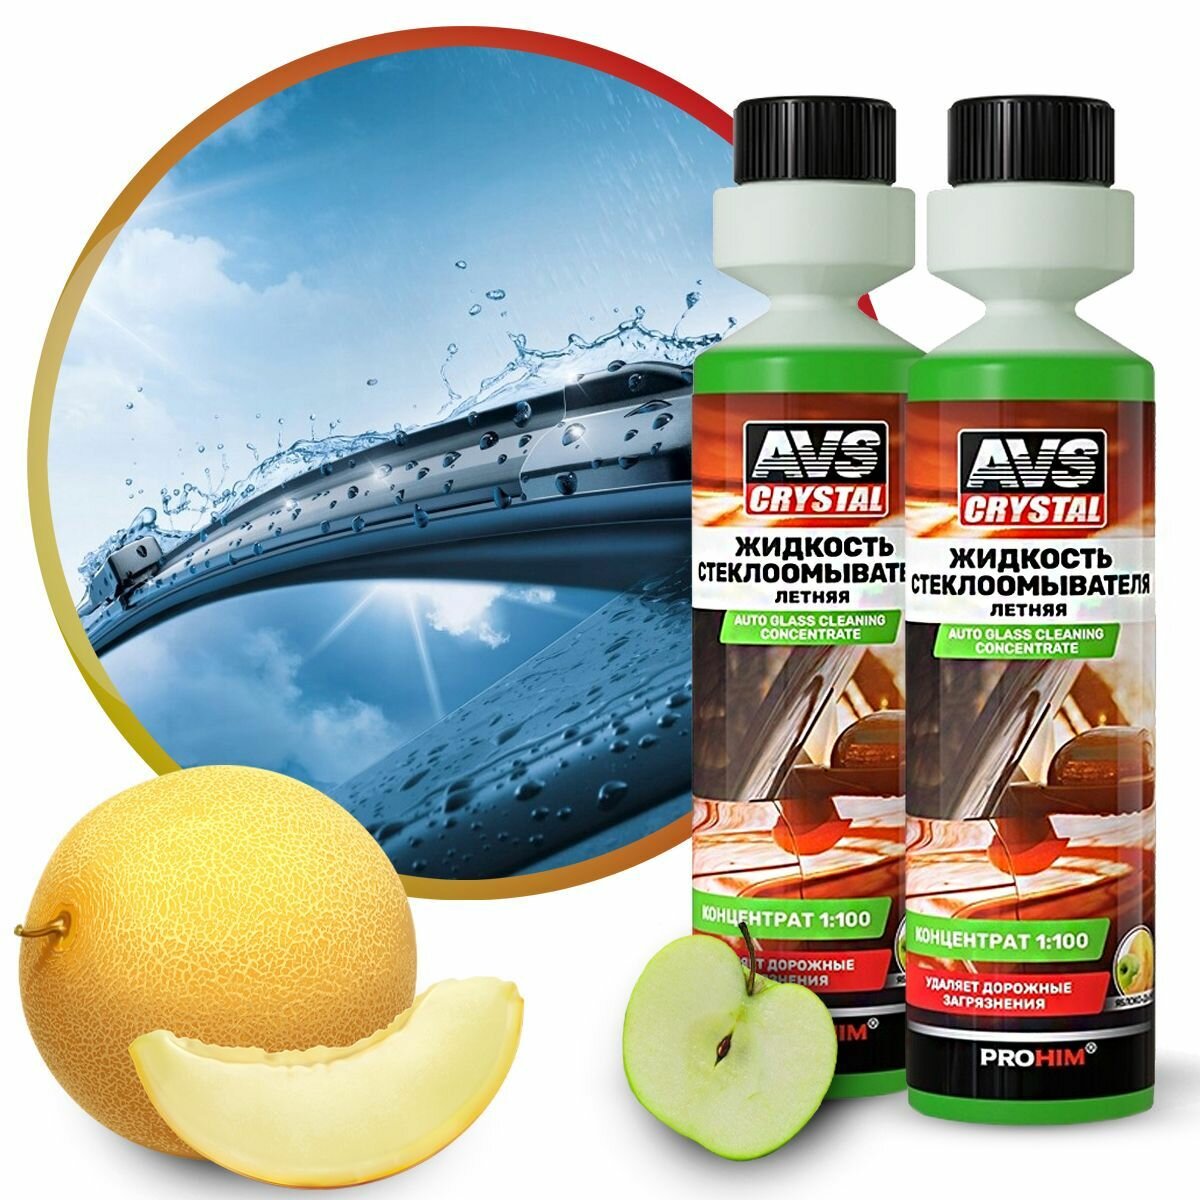 Жидкость стеклоомывателя AVS летняя (концентрат 1:100) Яблоко-дыня 2шт по 250 мл.